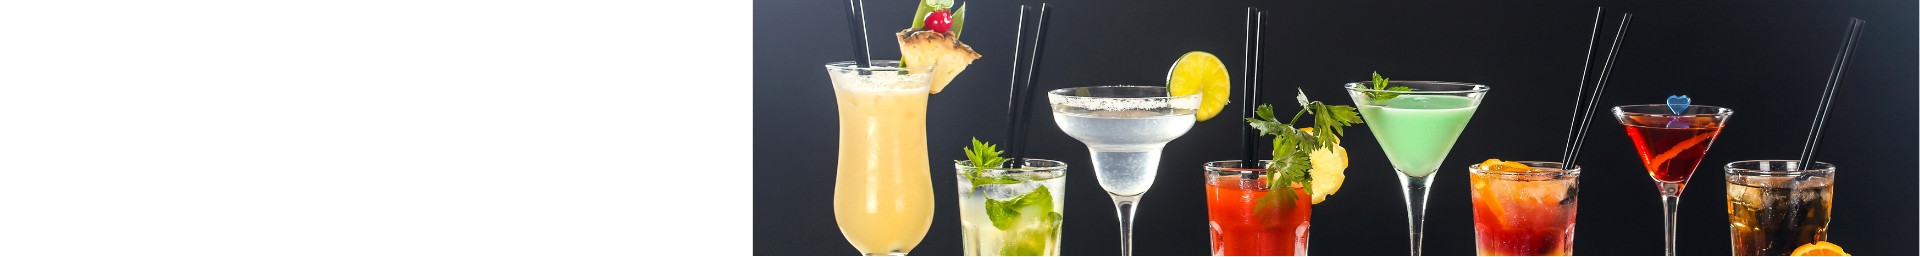 Pour cocktails